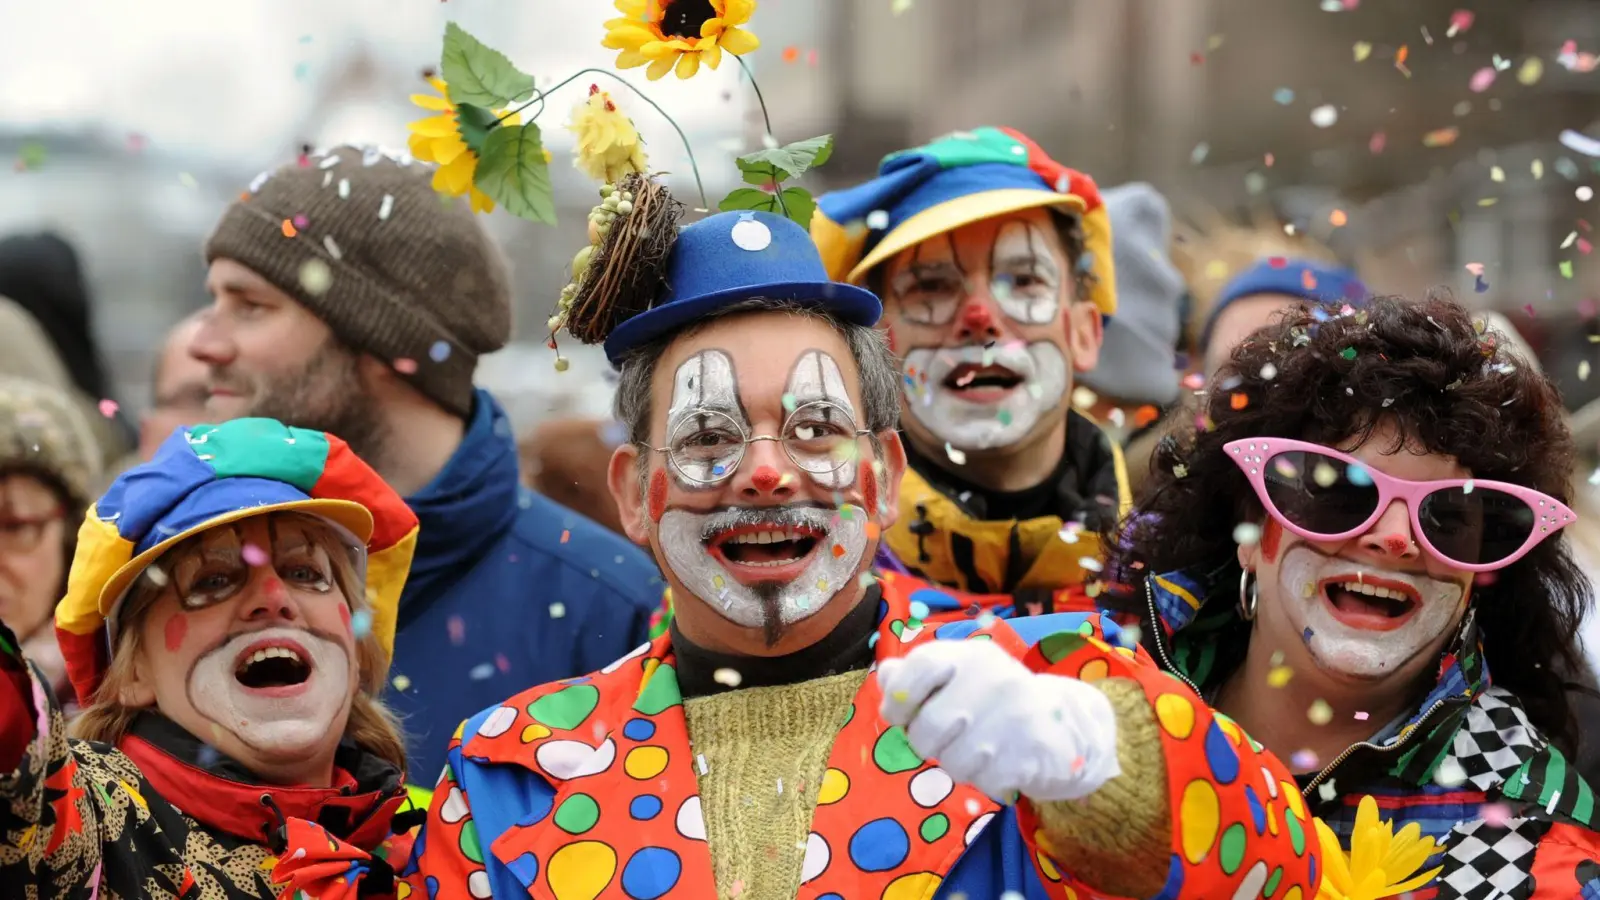 Besucher in Clown-Kostümen werfen in Nürnberg beim Faschingsumzug mit Konfetti. (Foto: picture alliance / dpa/Archivbild)